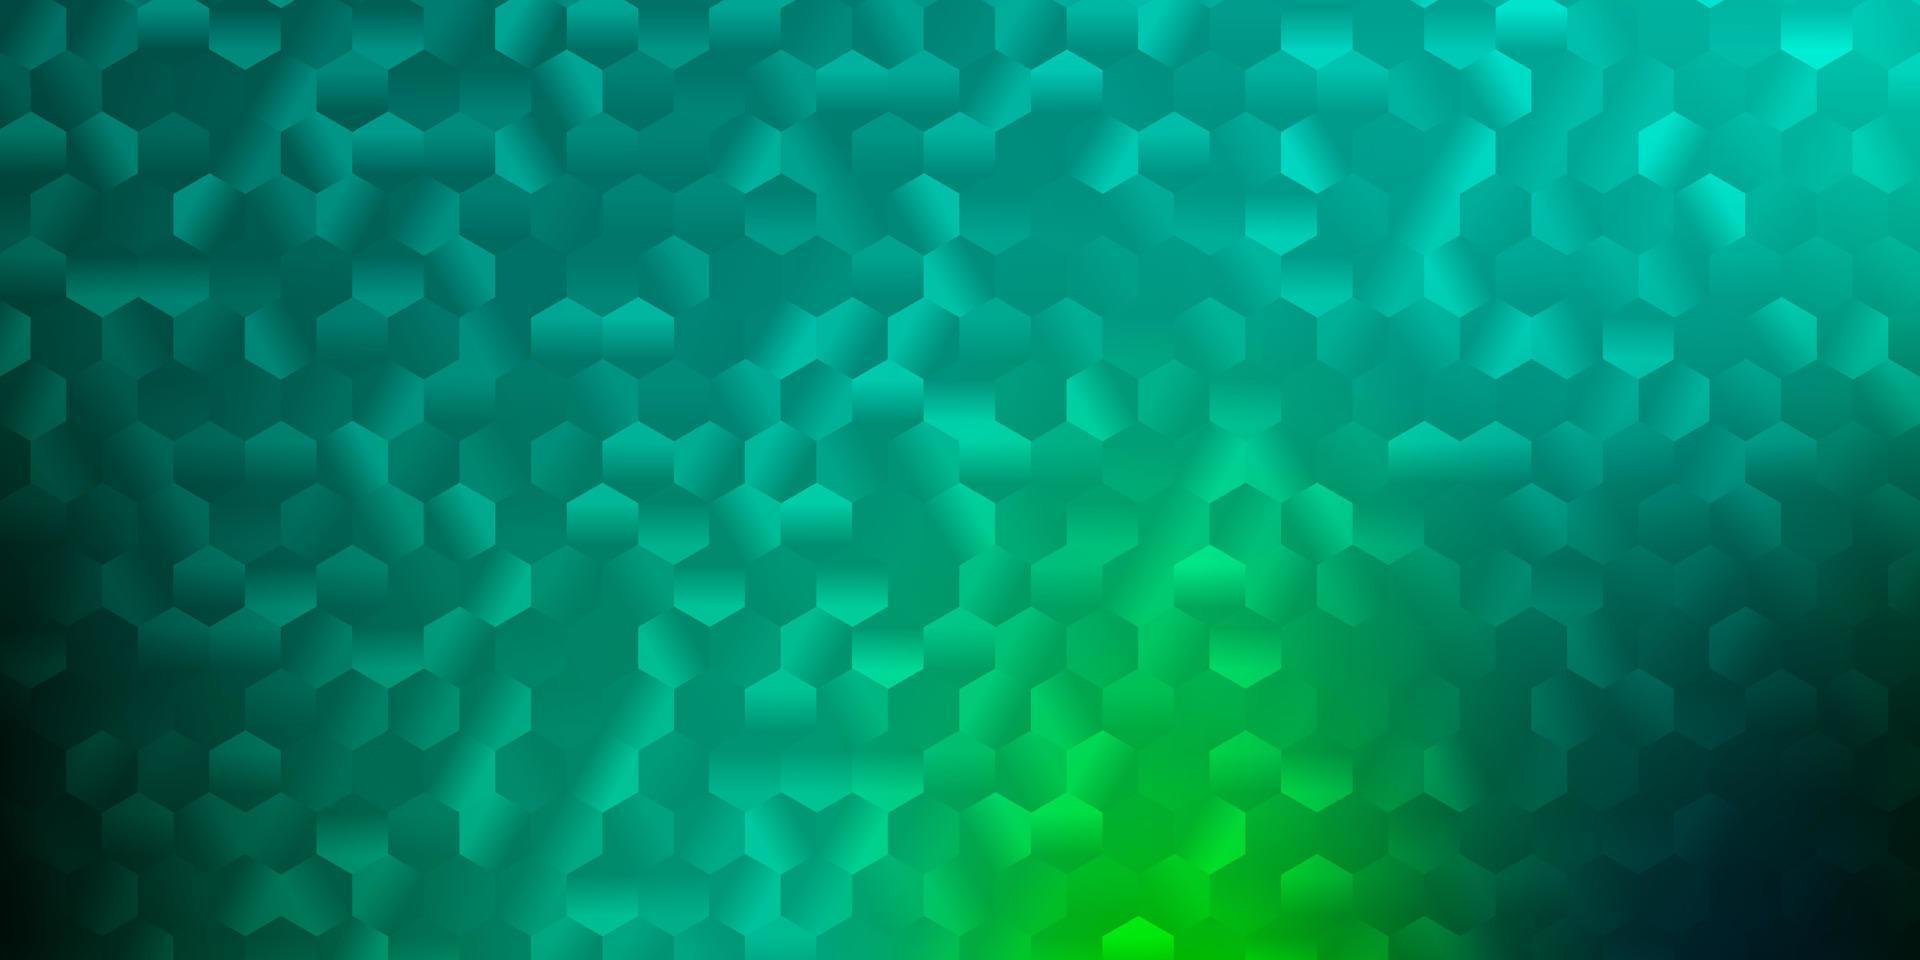 patrón de vector verde claro con hexágonos.